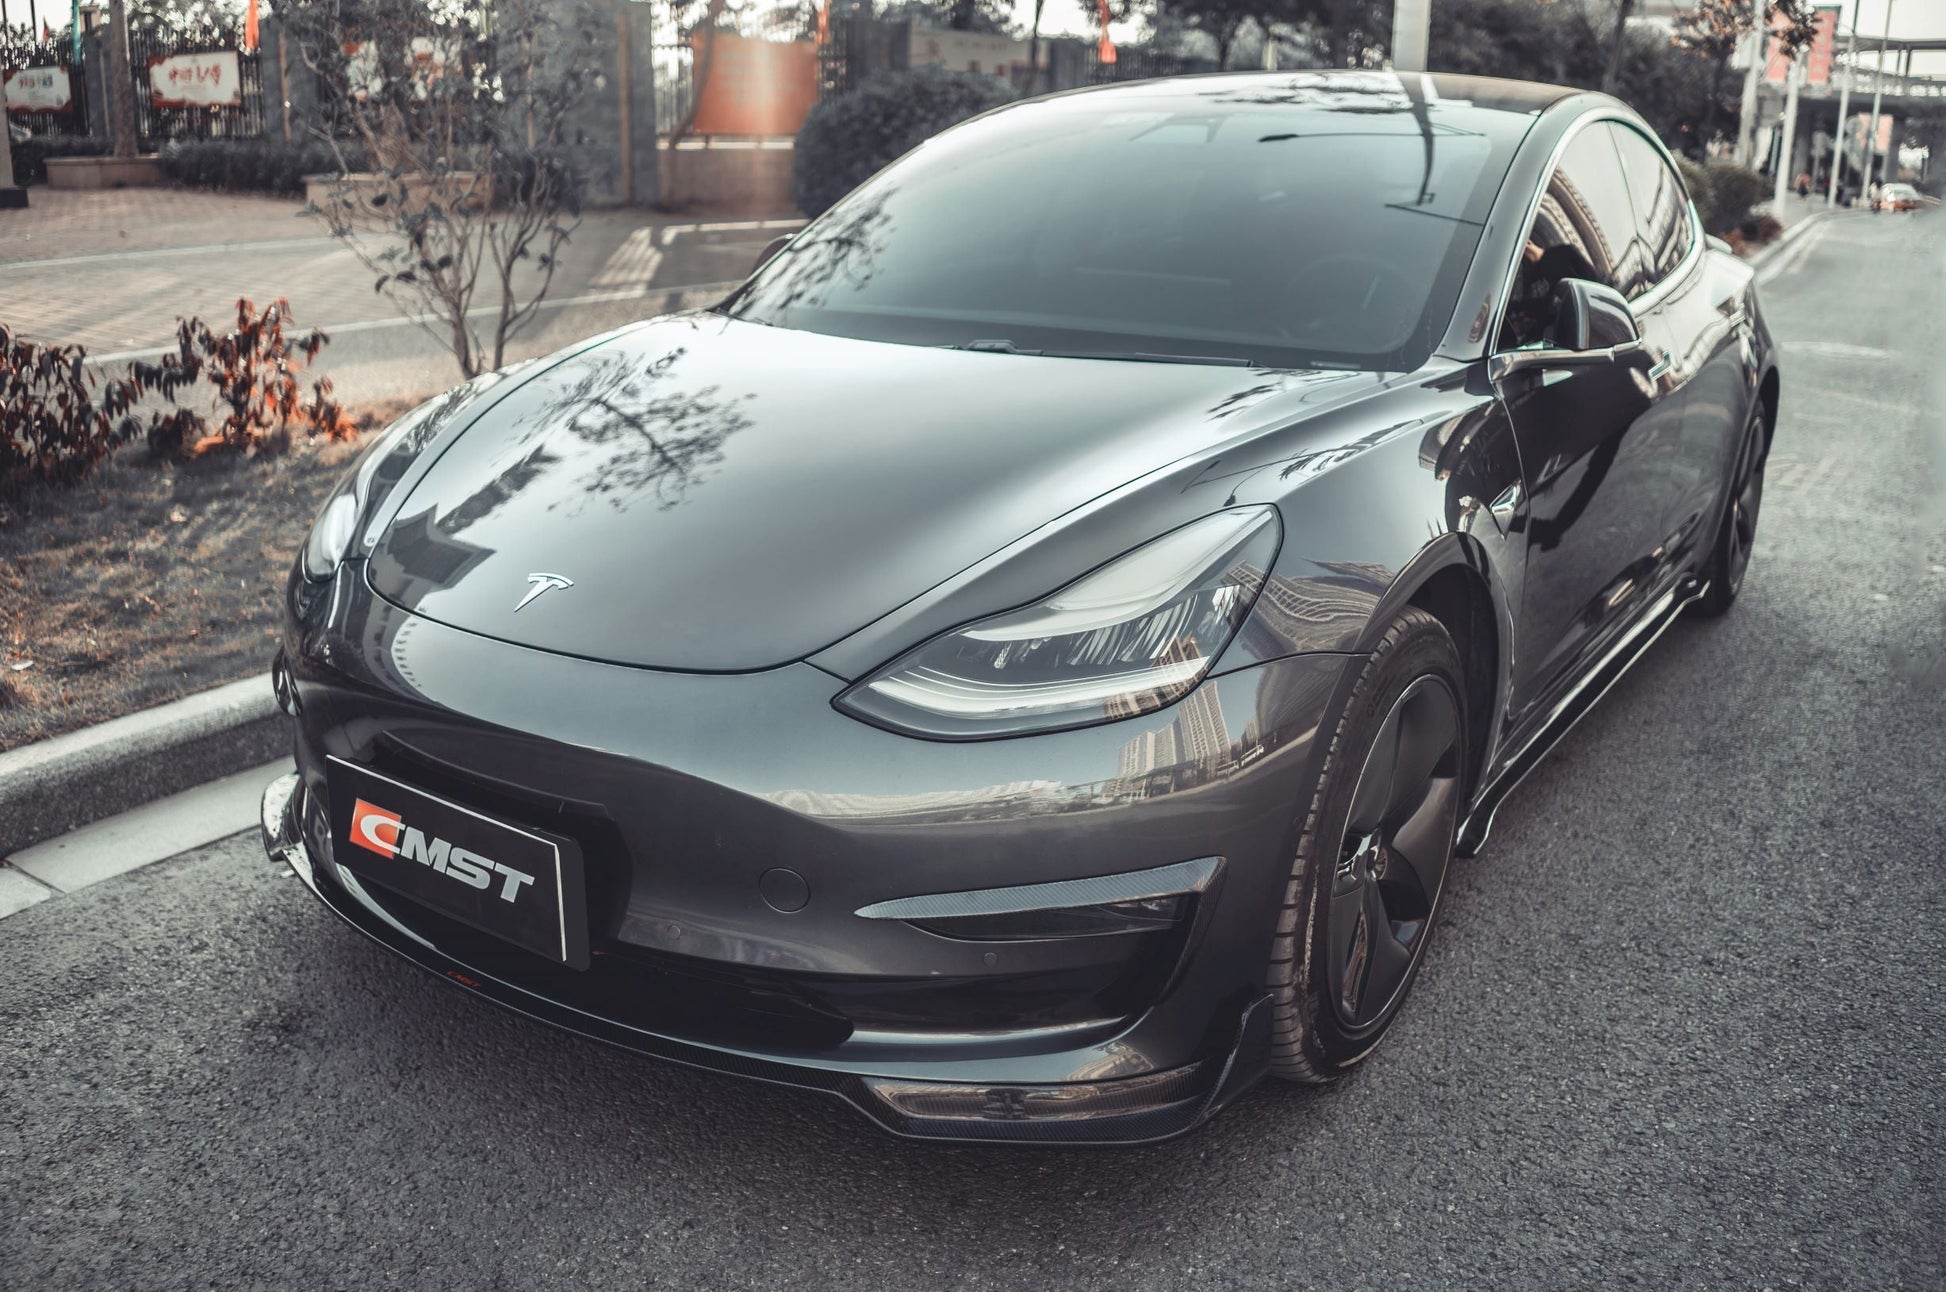 TESERY×CMST Carbon Fiber Full Body Kit Style B for Tesla Model 3 - Tesery Official Store